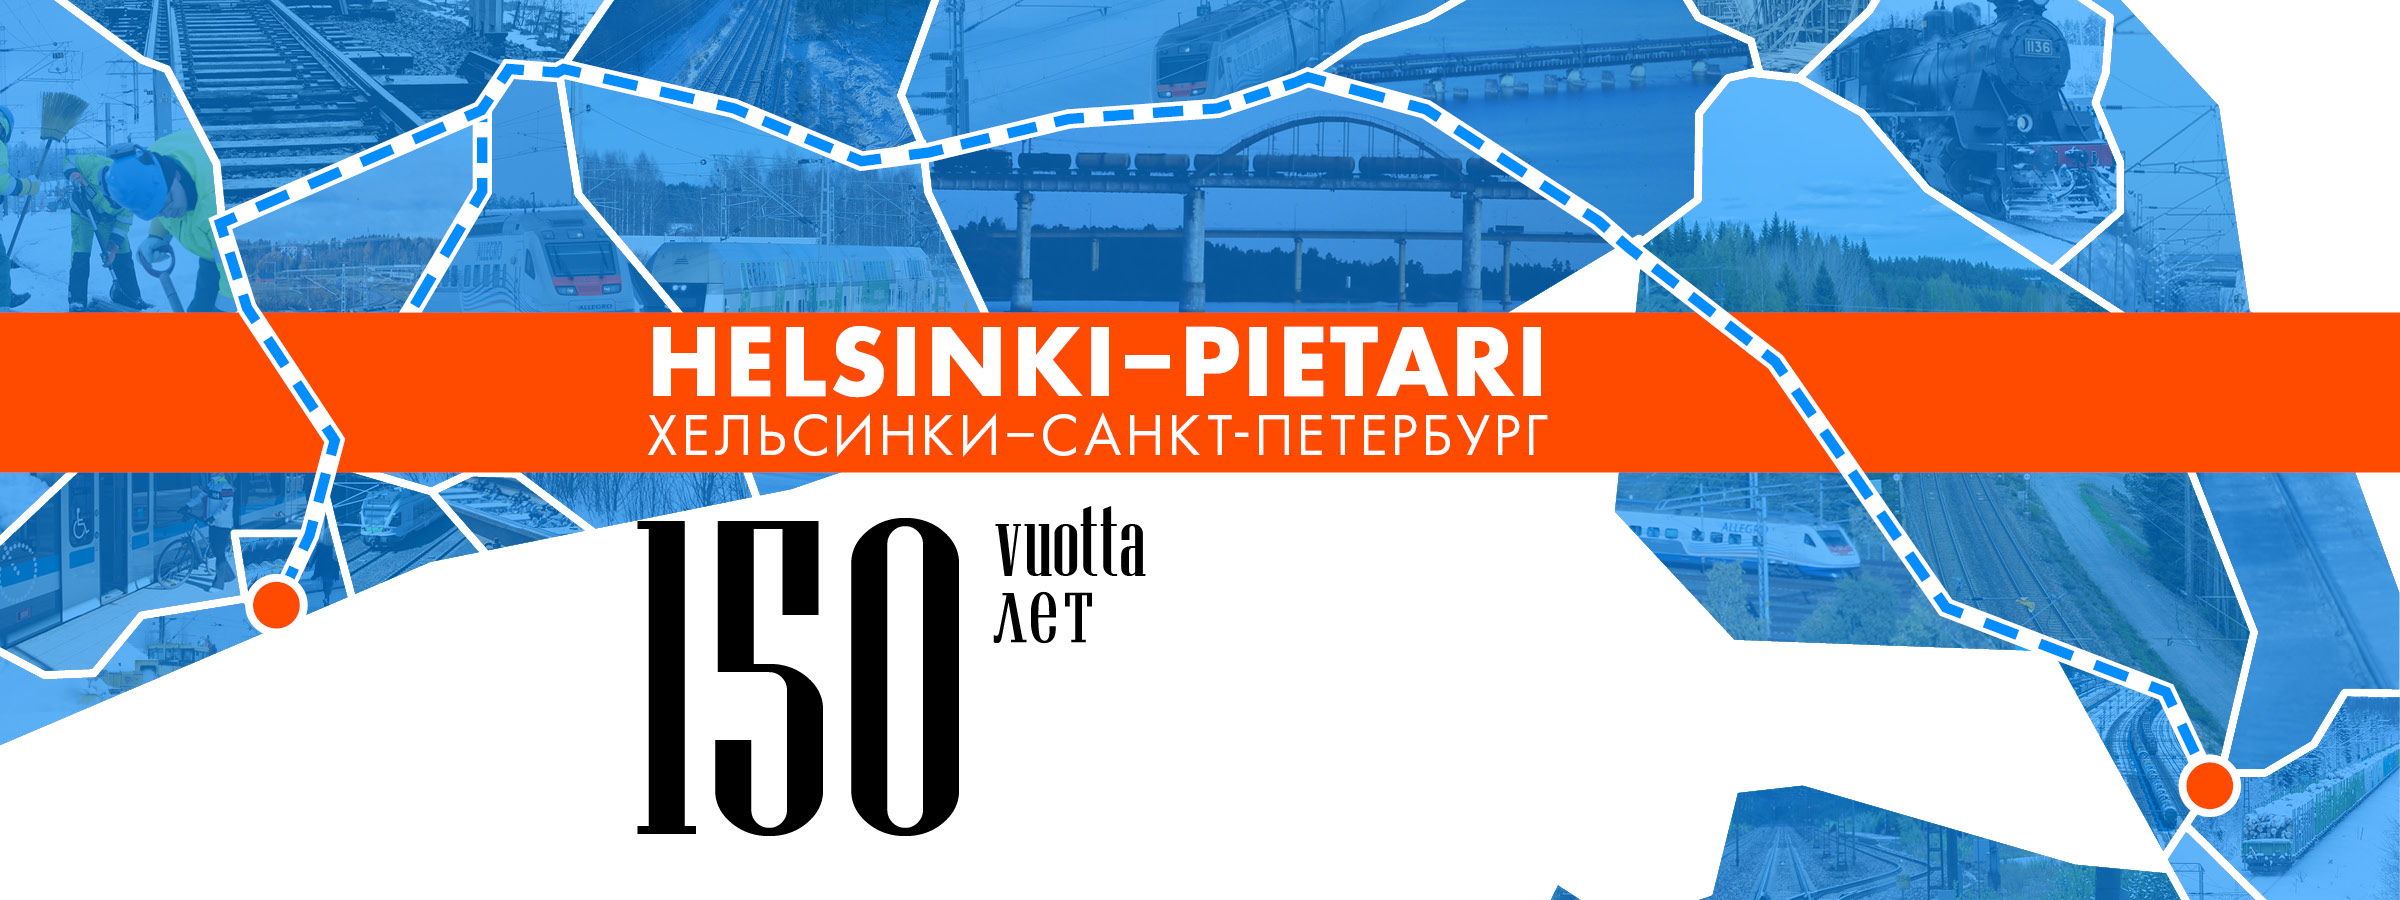 Helsinki-Pietari 150 vuotta